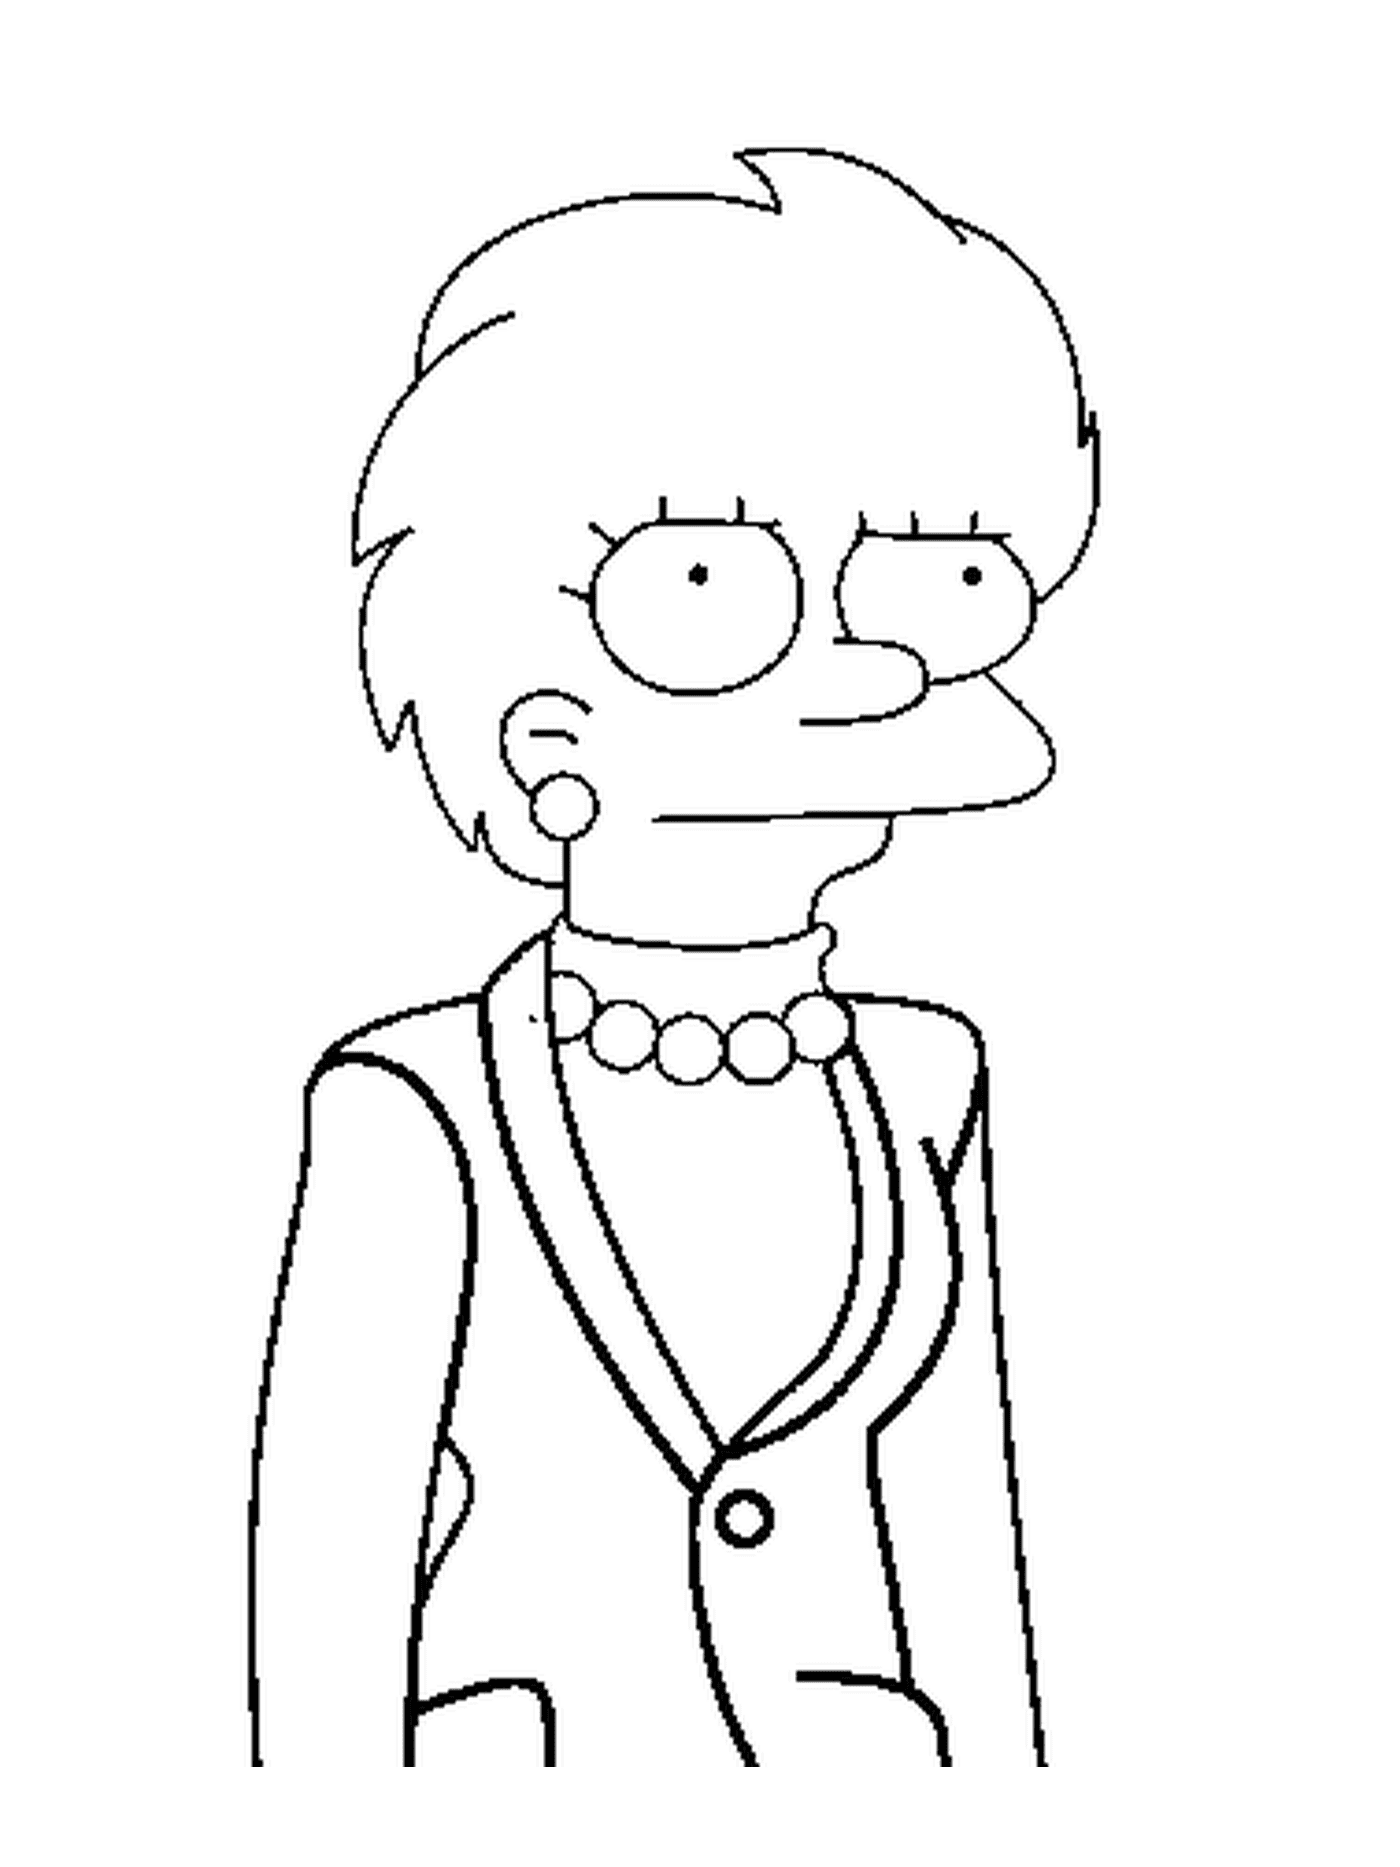  Lisa Simpson, future president 